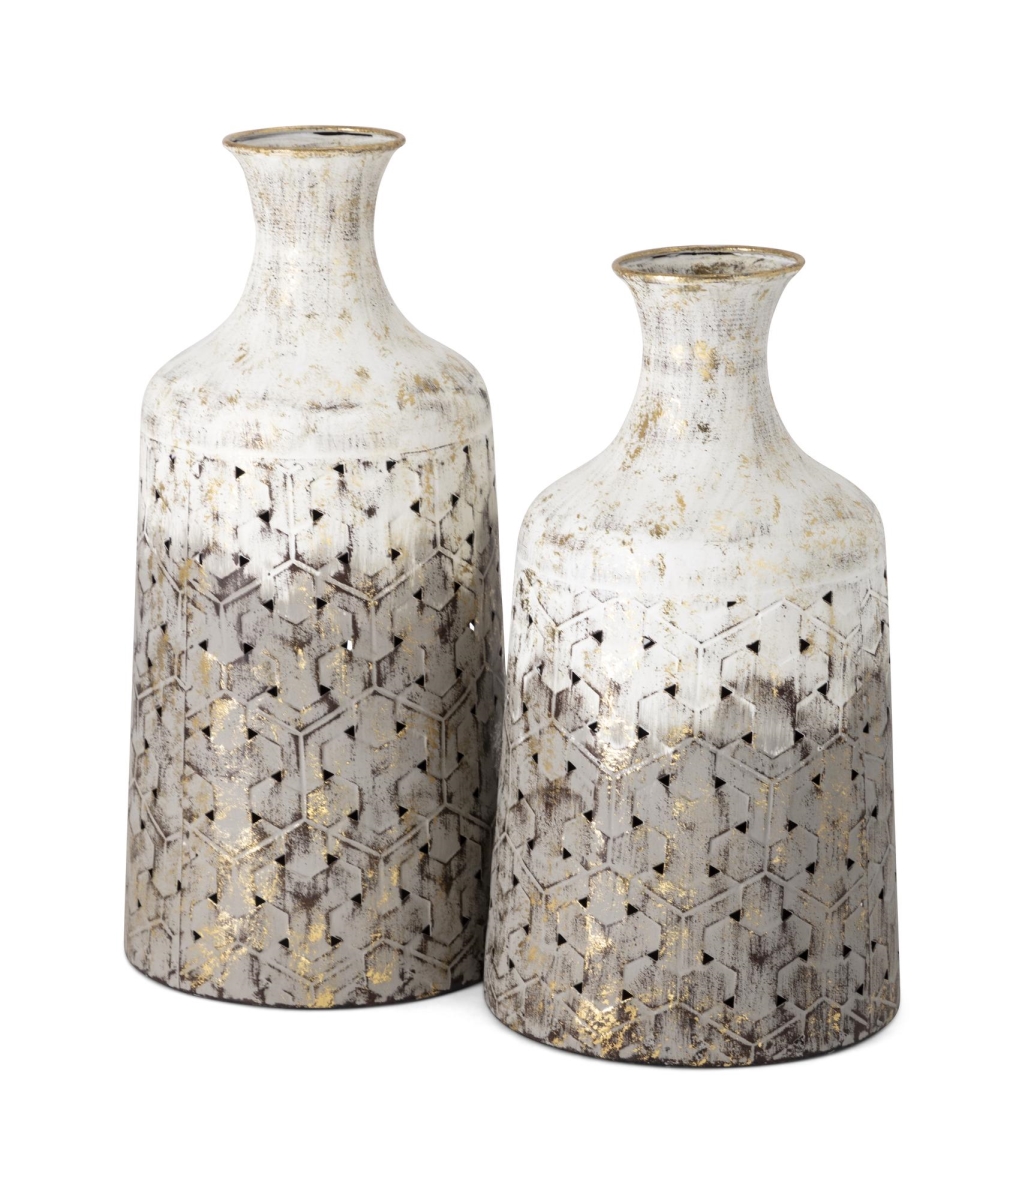 Imax 28926-2 Lockley Metal Vases - Set Of 2